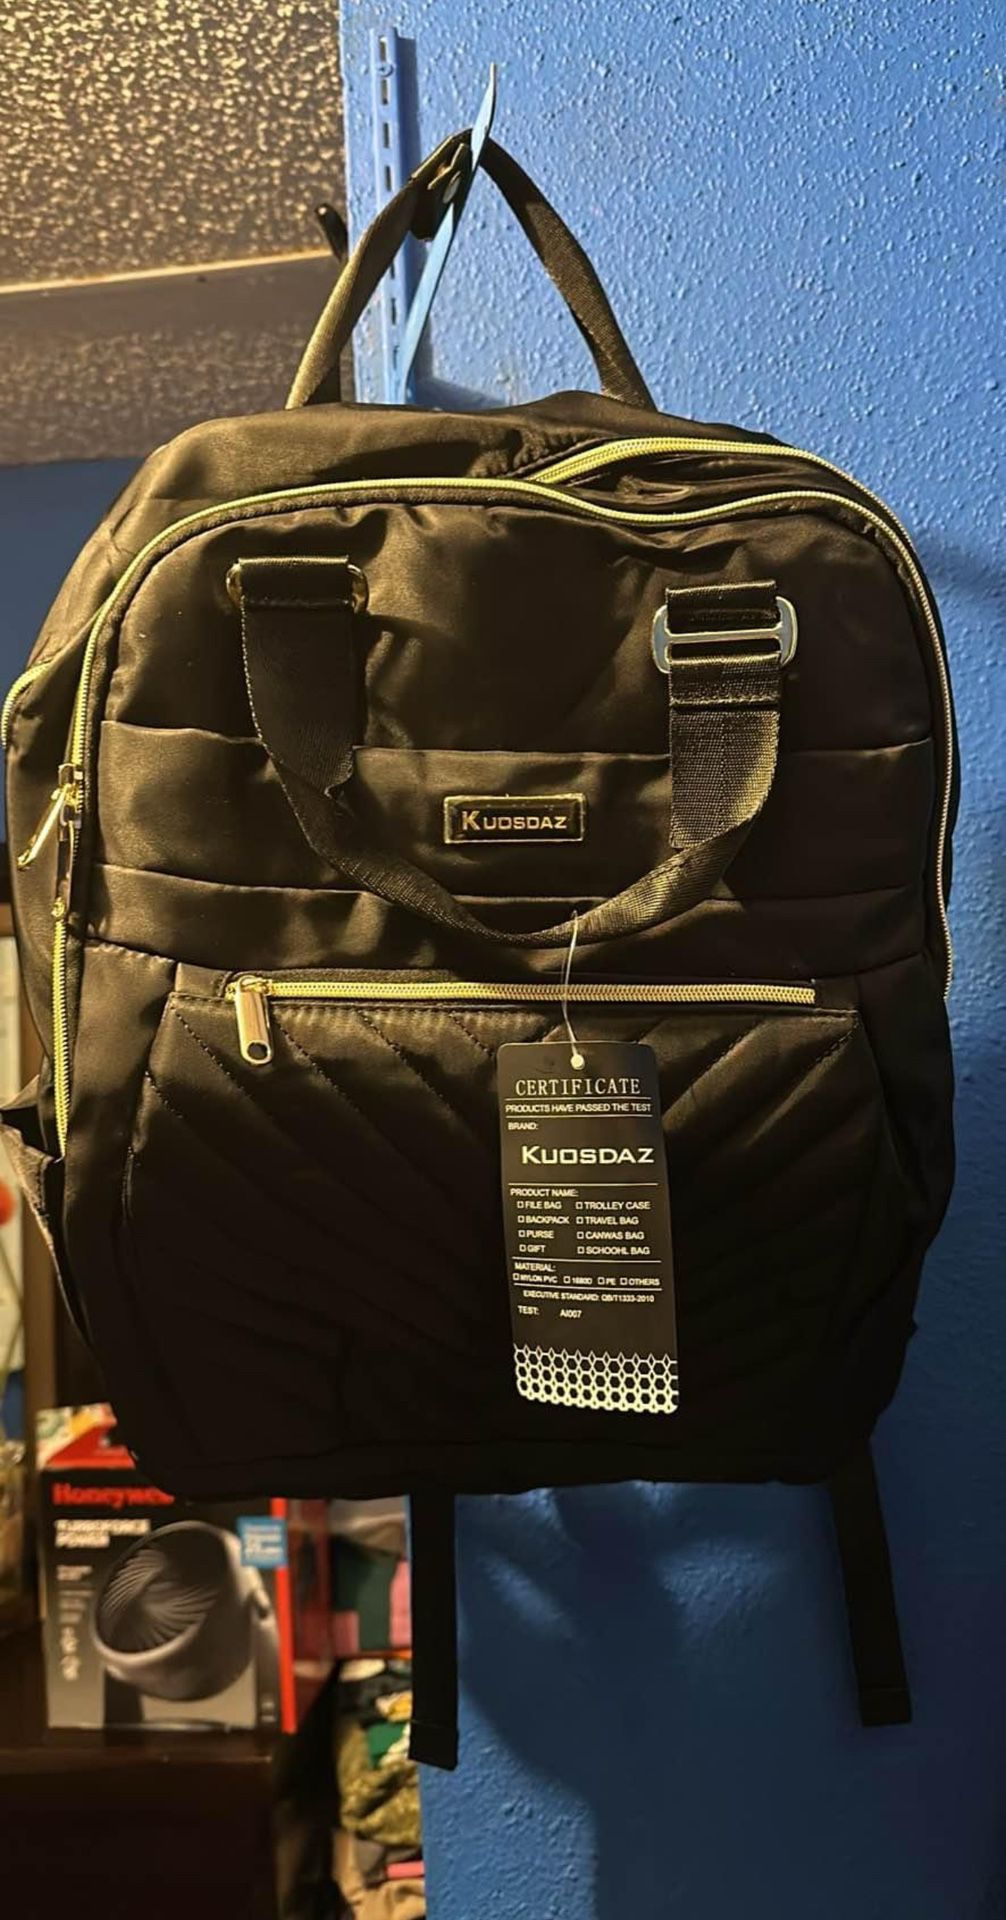 Kuosdaz Travel backpack (New)